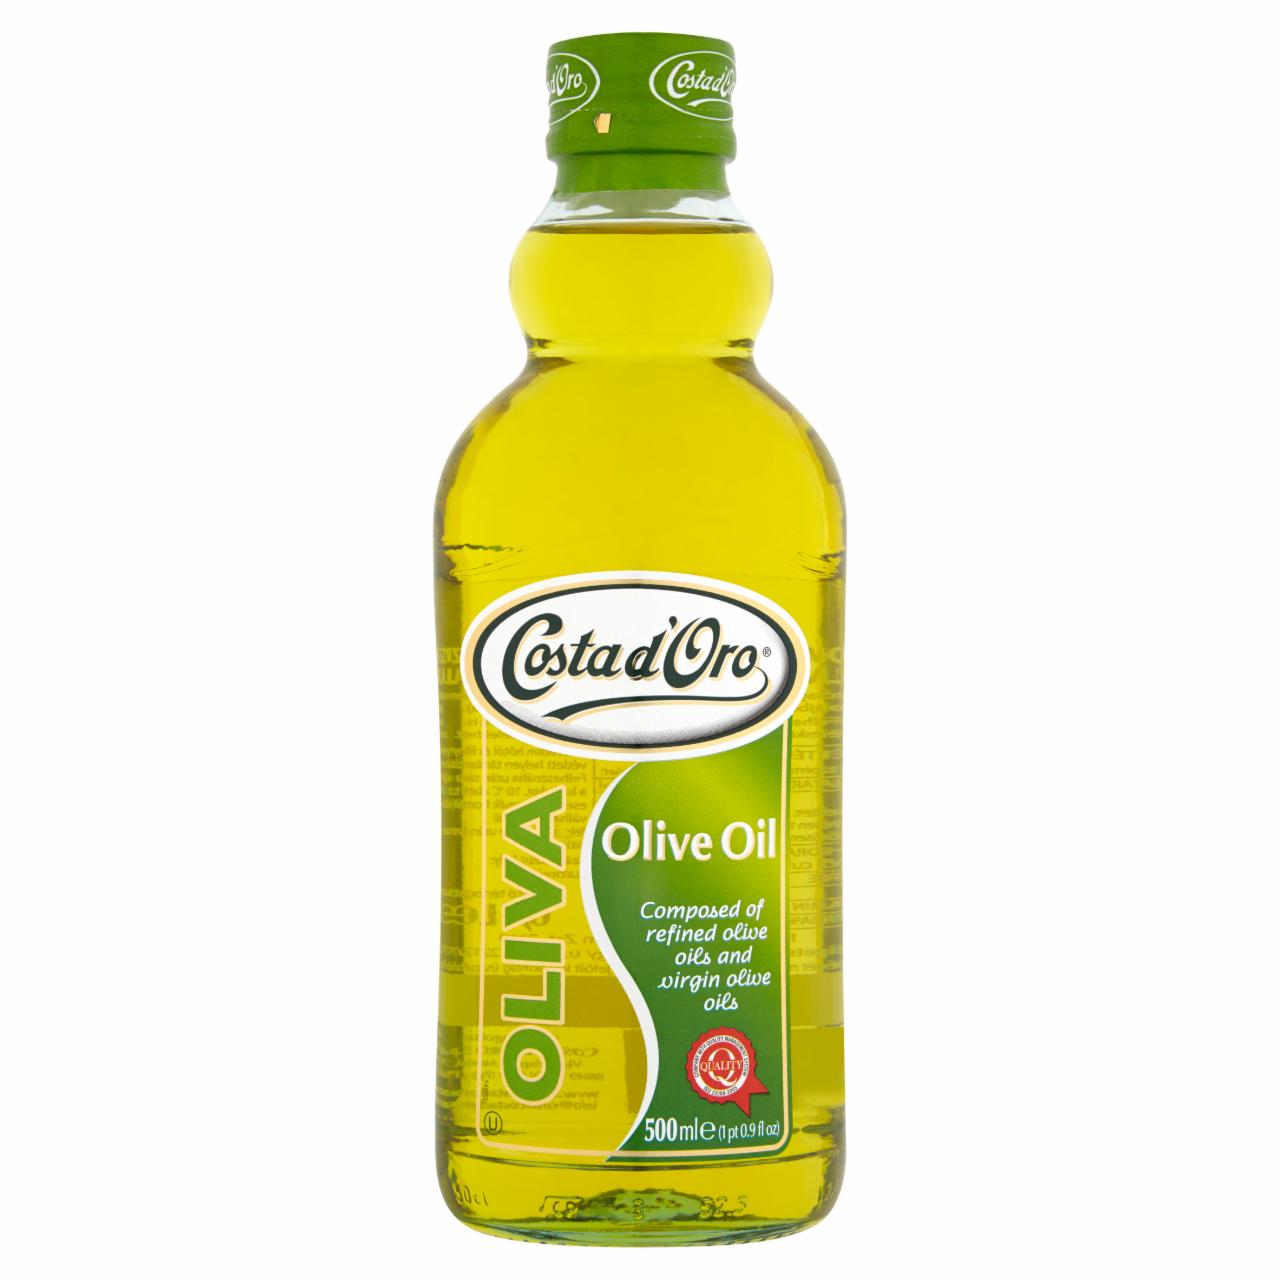 Képek - Costa d'Oro finomított olívaolajból és szűz olívaolajból álló olívaolaj 500 ml